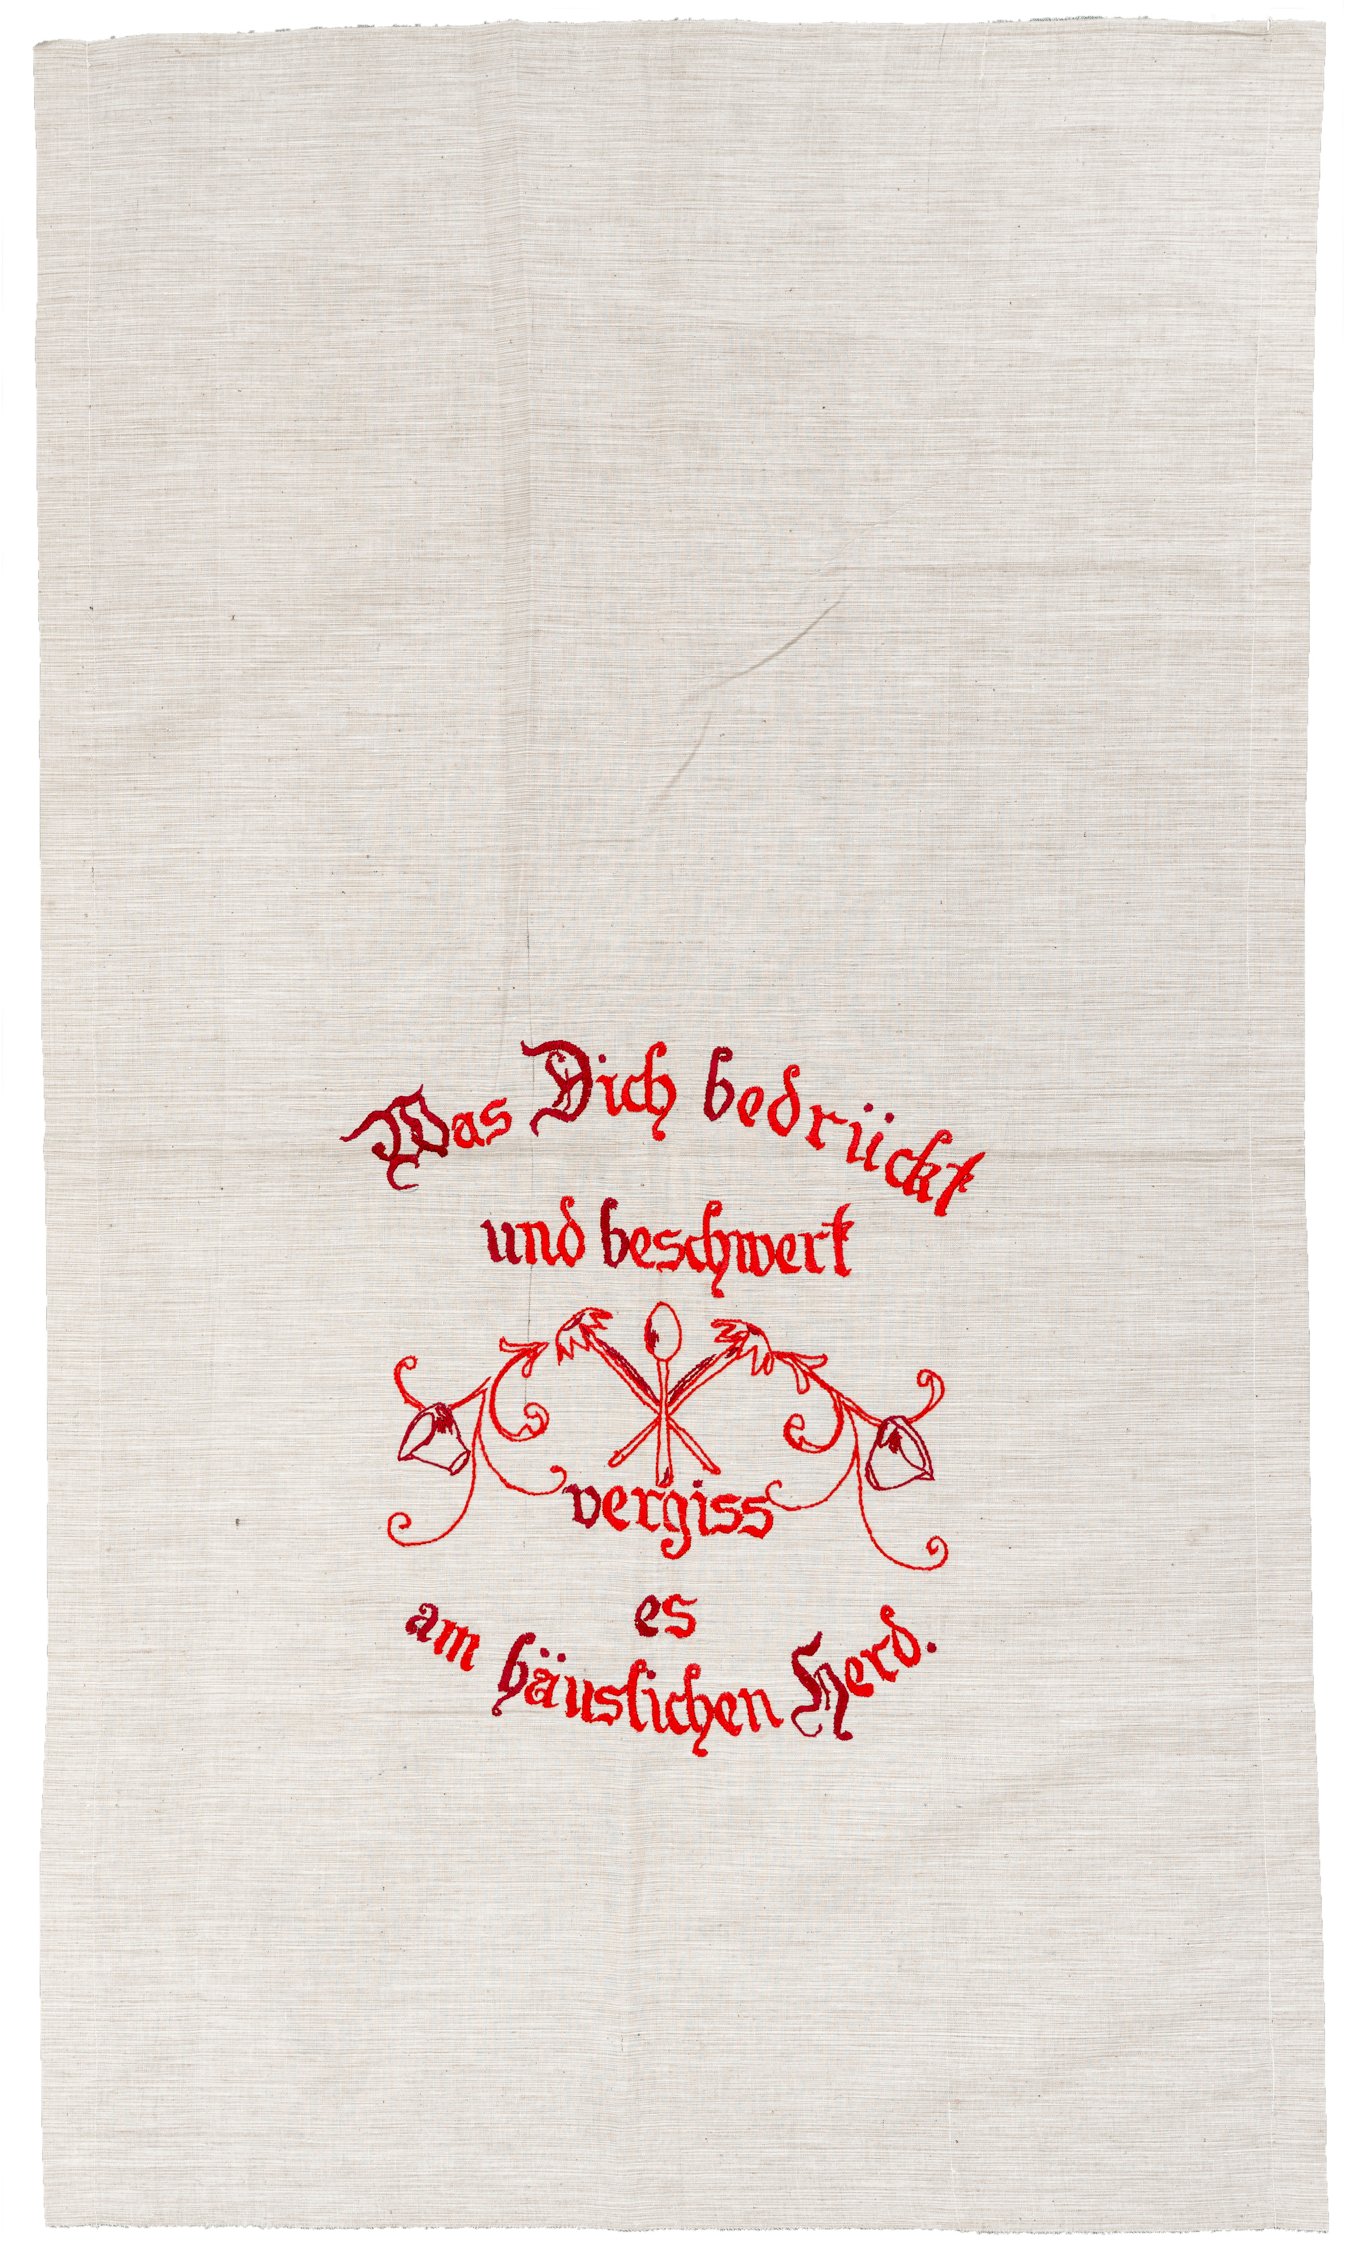 Spruchtuch: Was Dich bedrückt und beschwert vergiss es am häuslichen Herd. (Museum Abtei Liesborn des Kreises Warendorf CC BY-NC-SA)